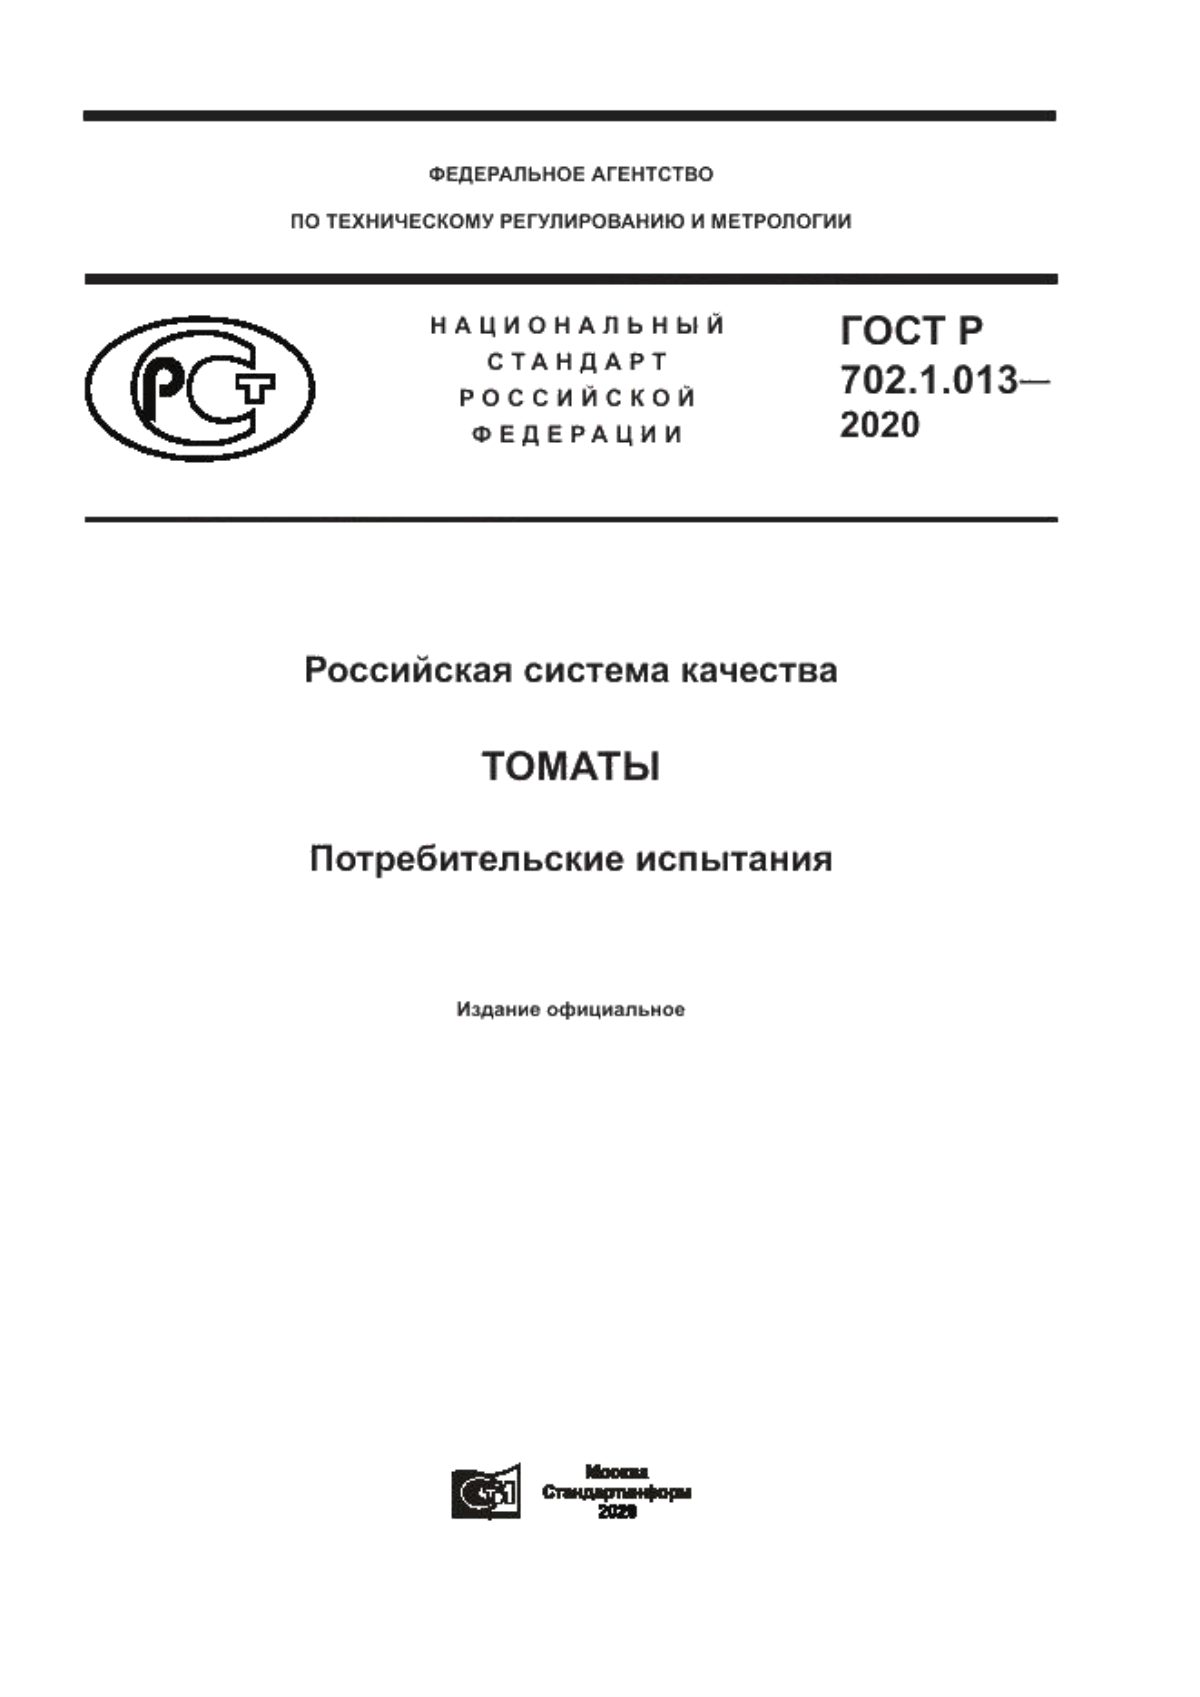 ГОСТ Р 702.1.013-2020 Российская система качества. Томаты. Потребительские испытания